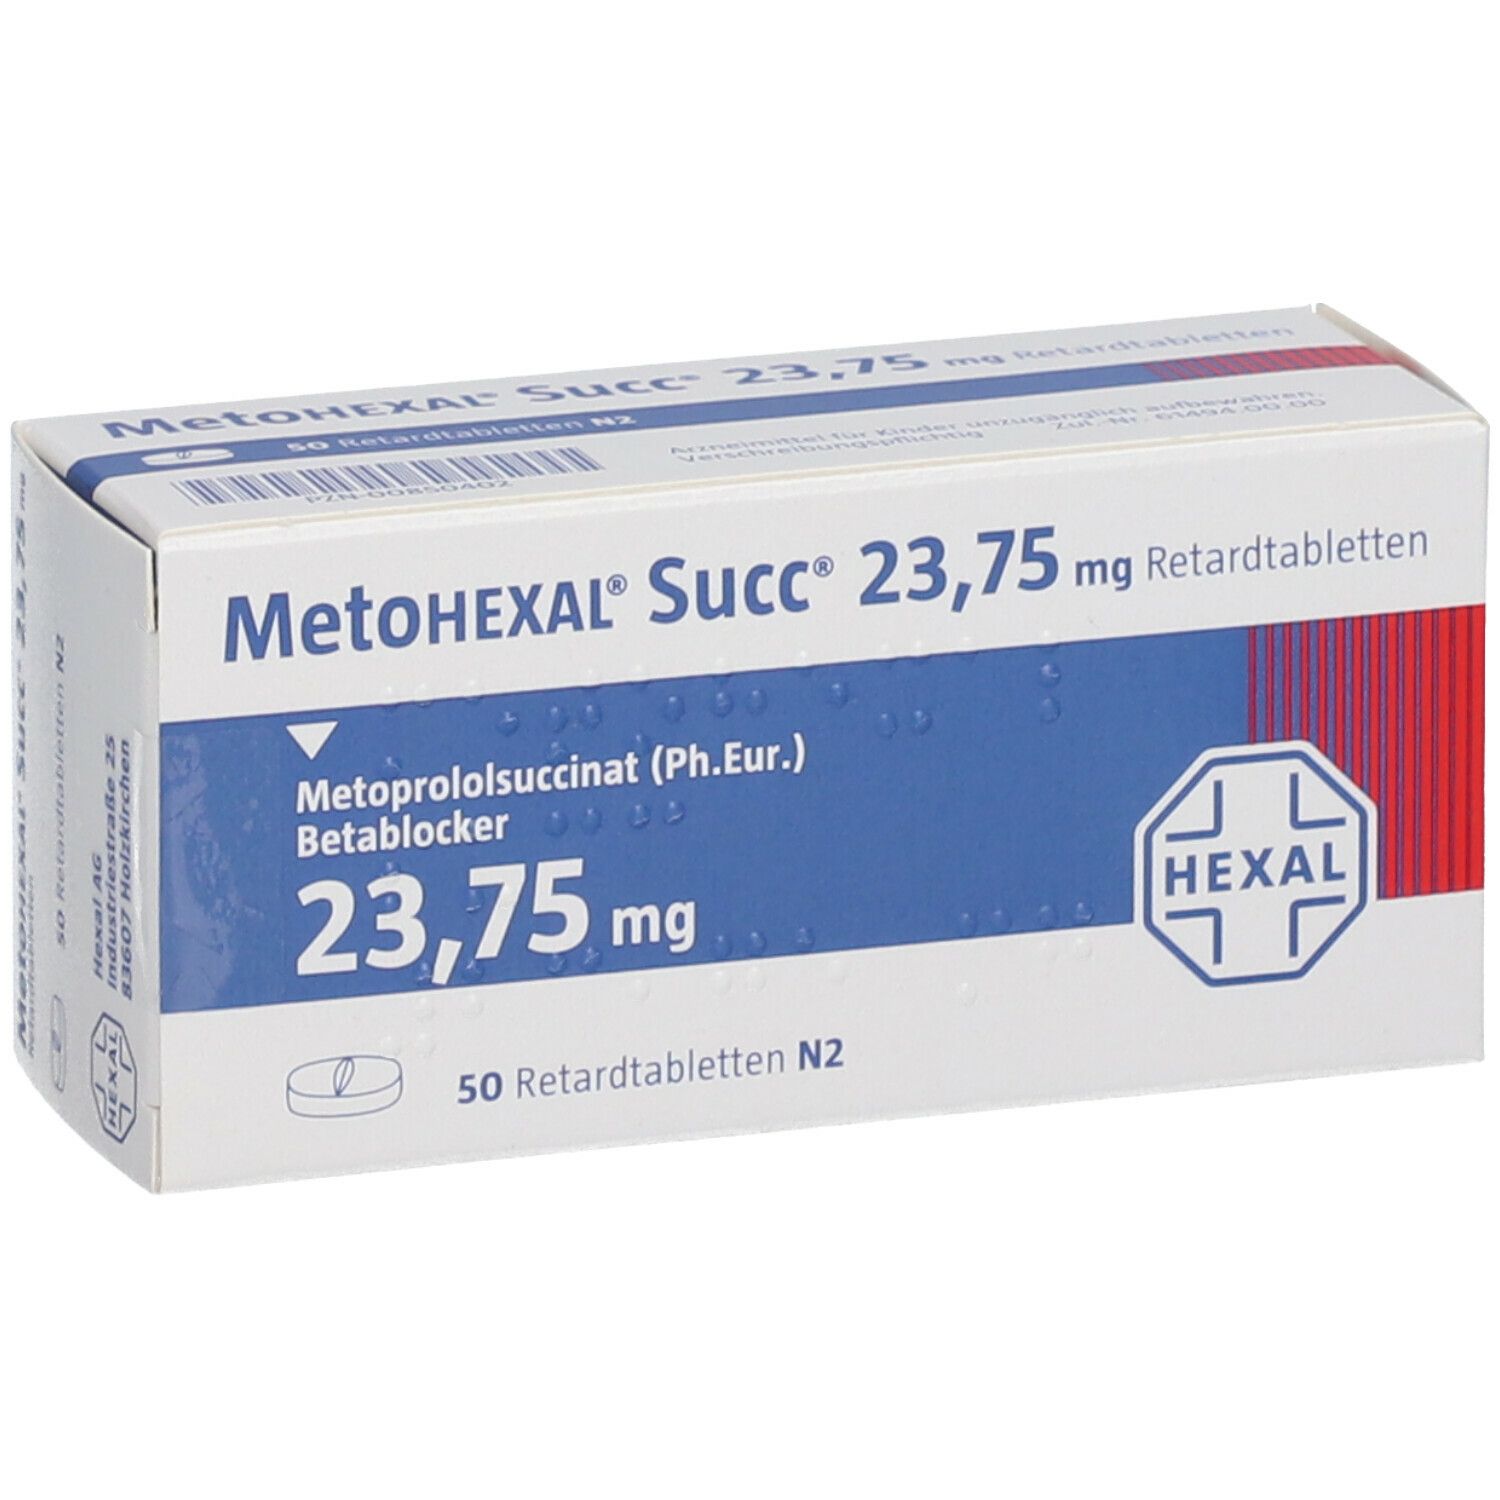 MetoHEXAL® Succ® 23,75 mg